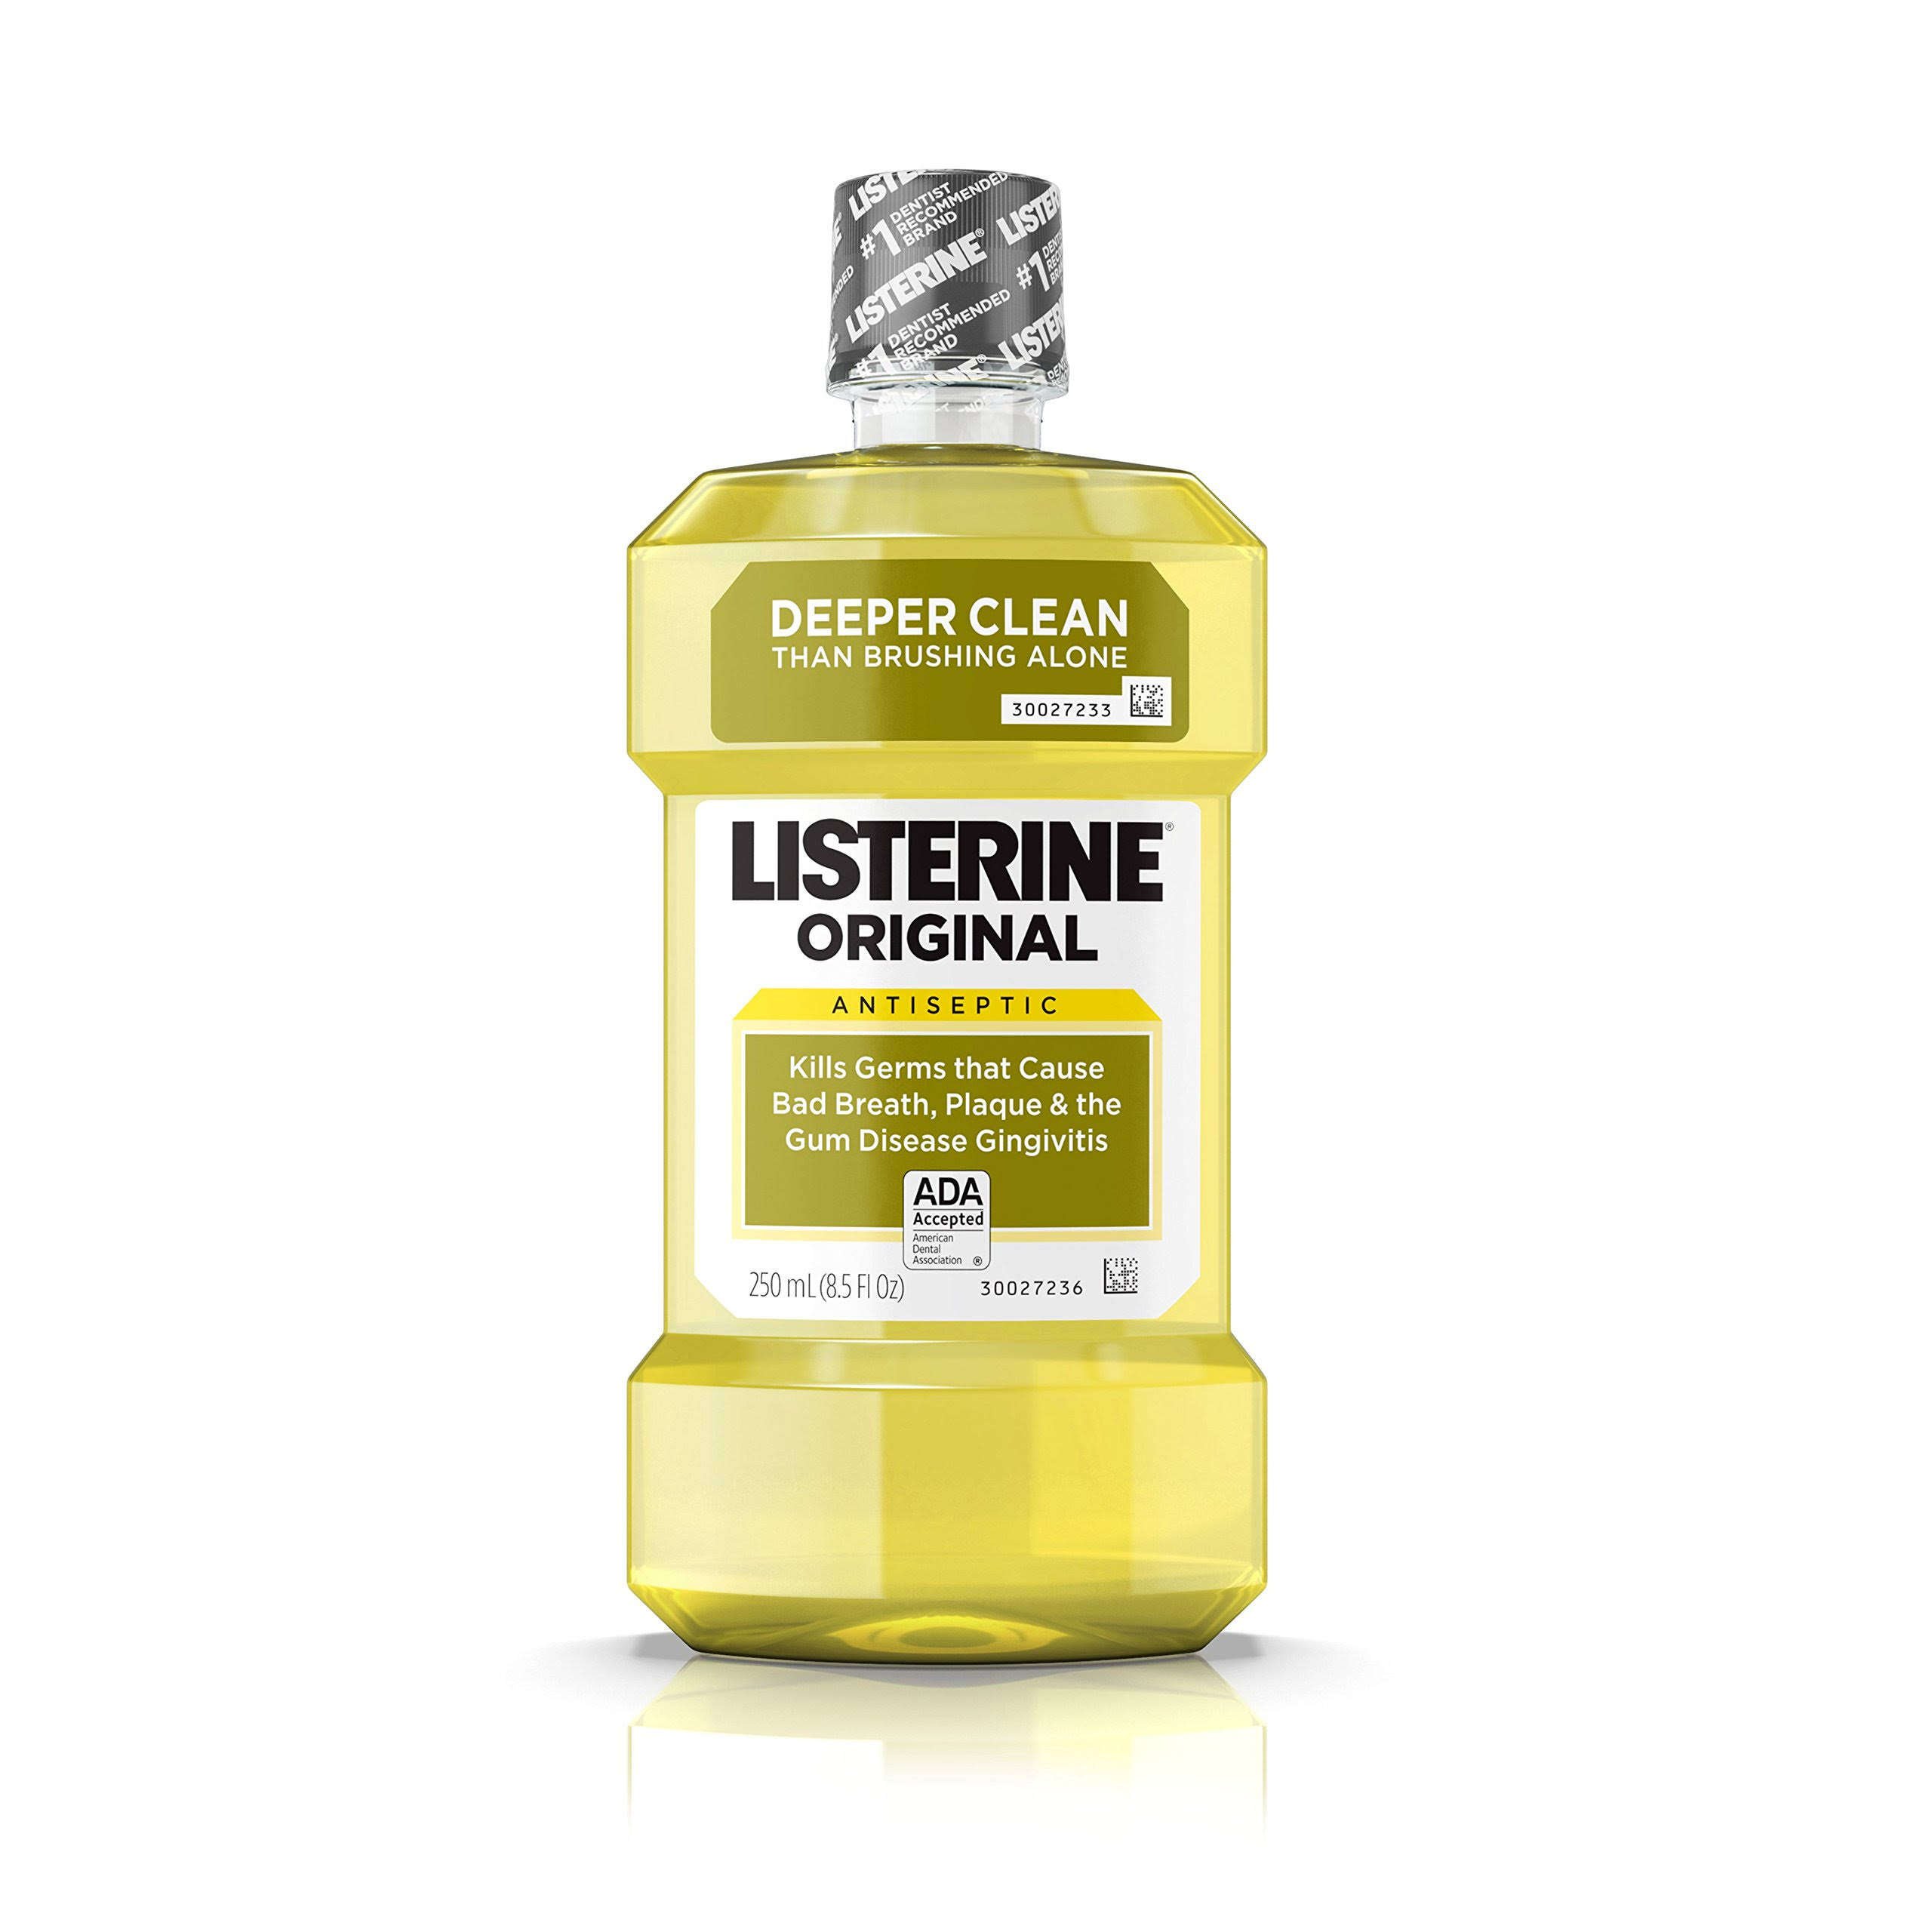 Listerine Antiseptic Mouthwash - Original, 250ml